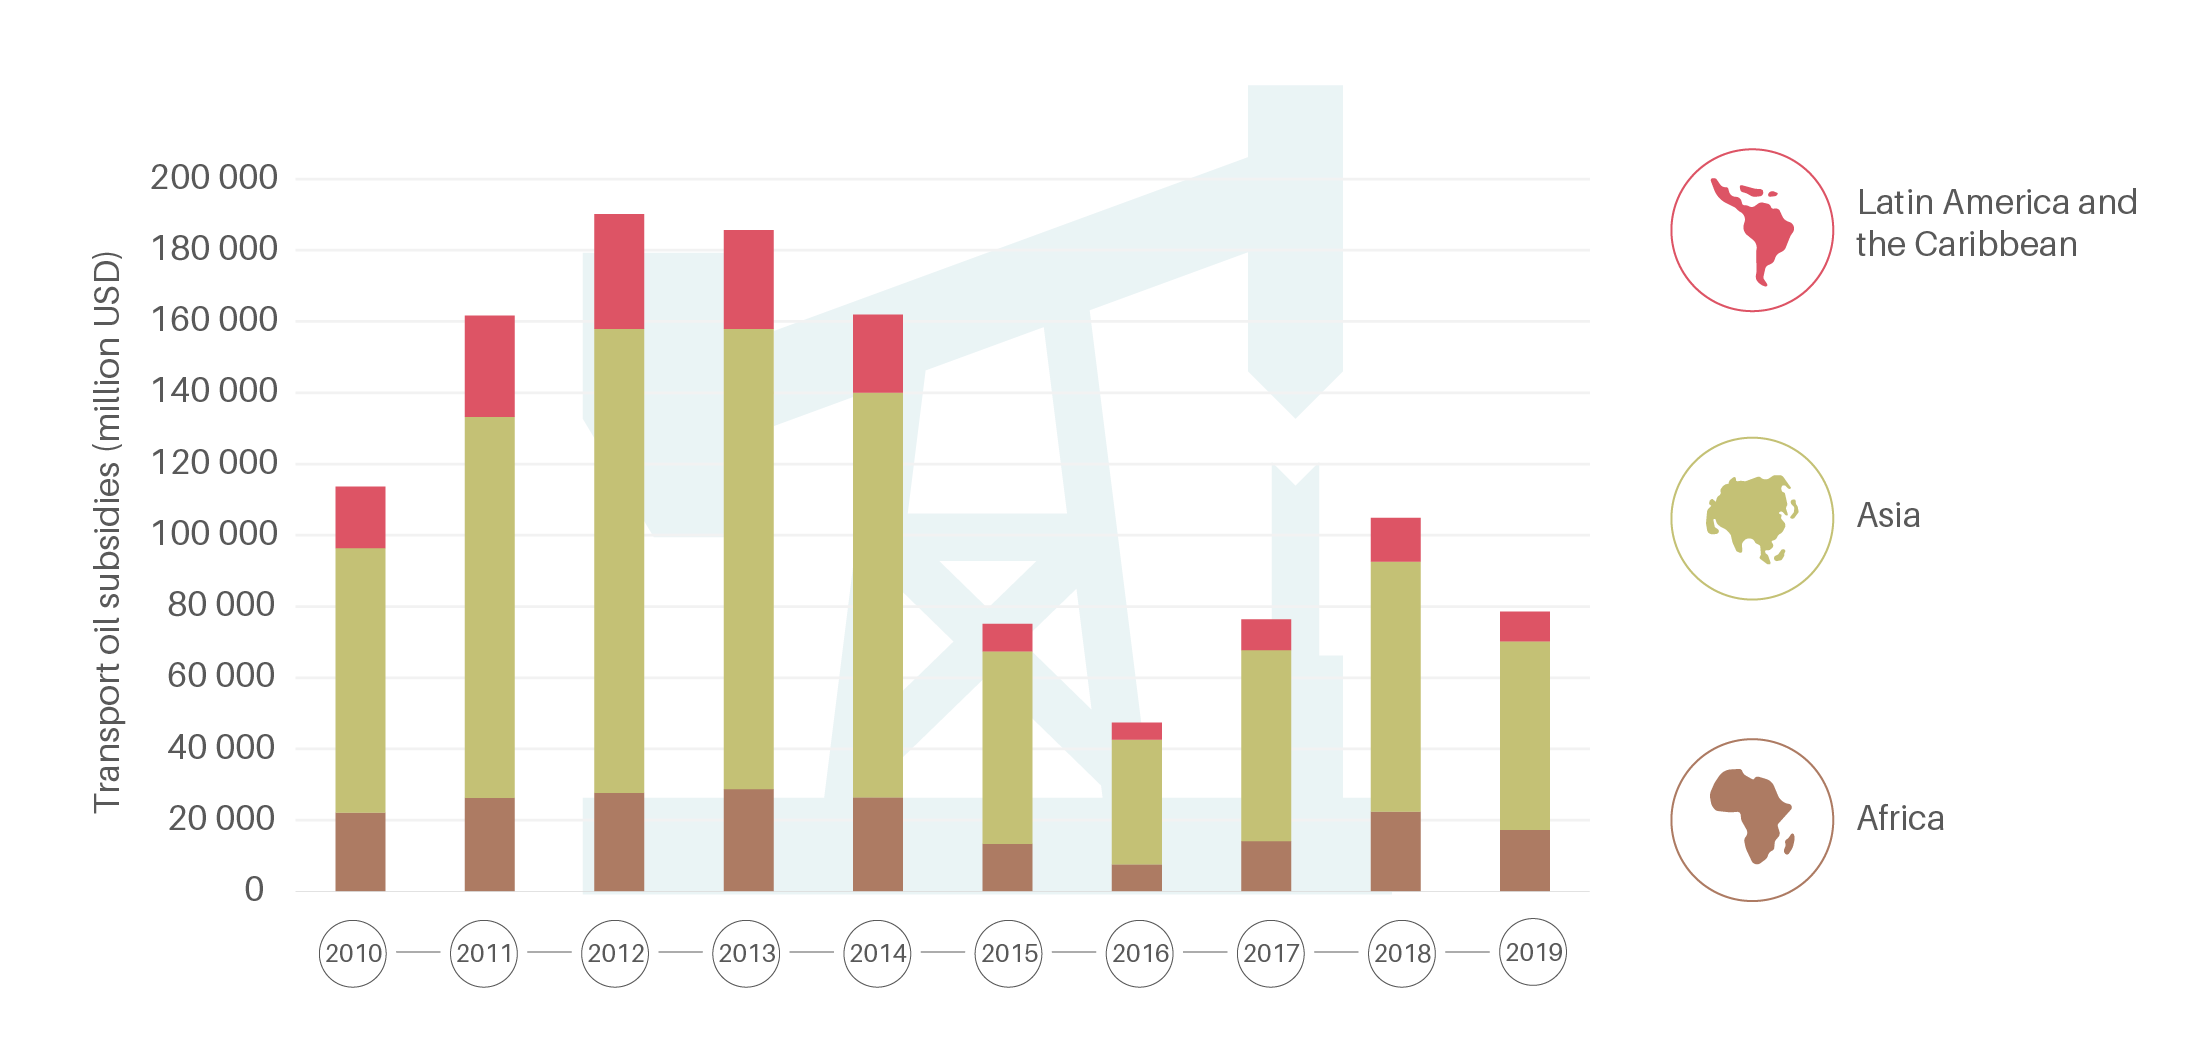 Transport oil subsidies, 2010-2019